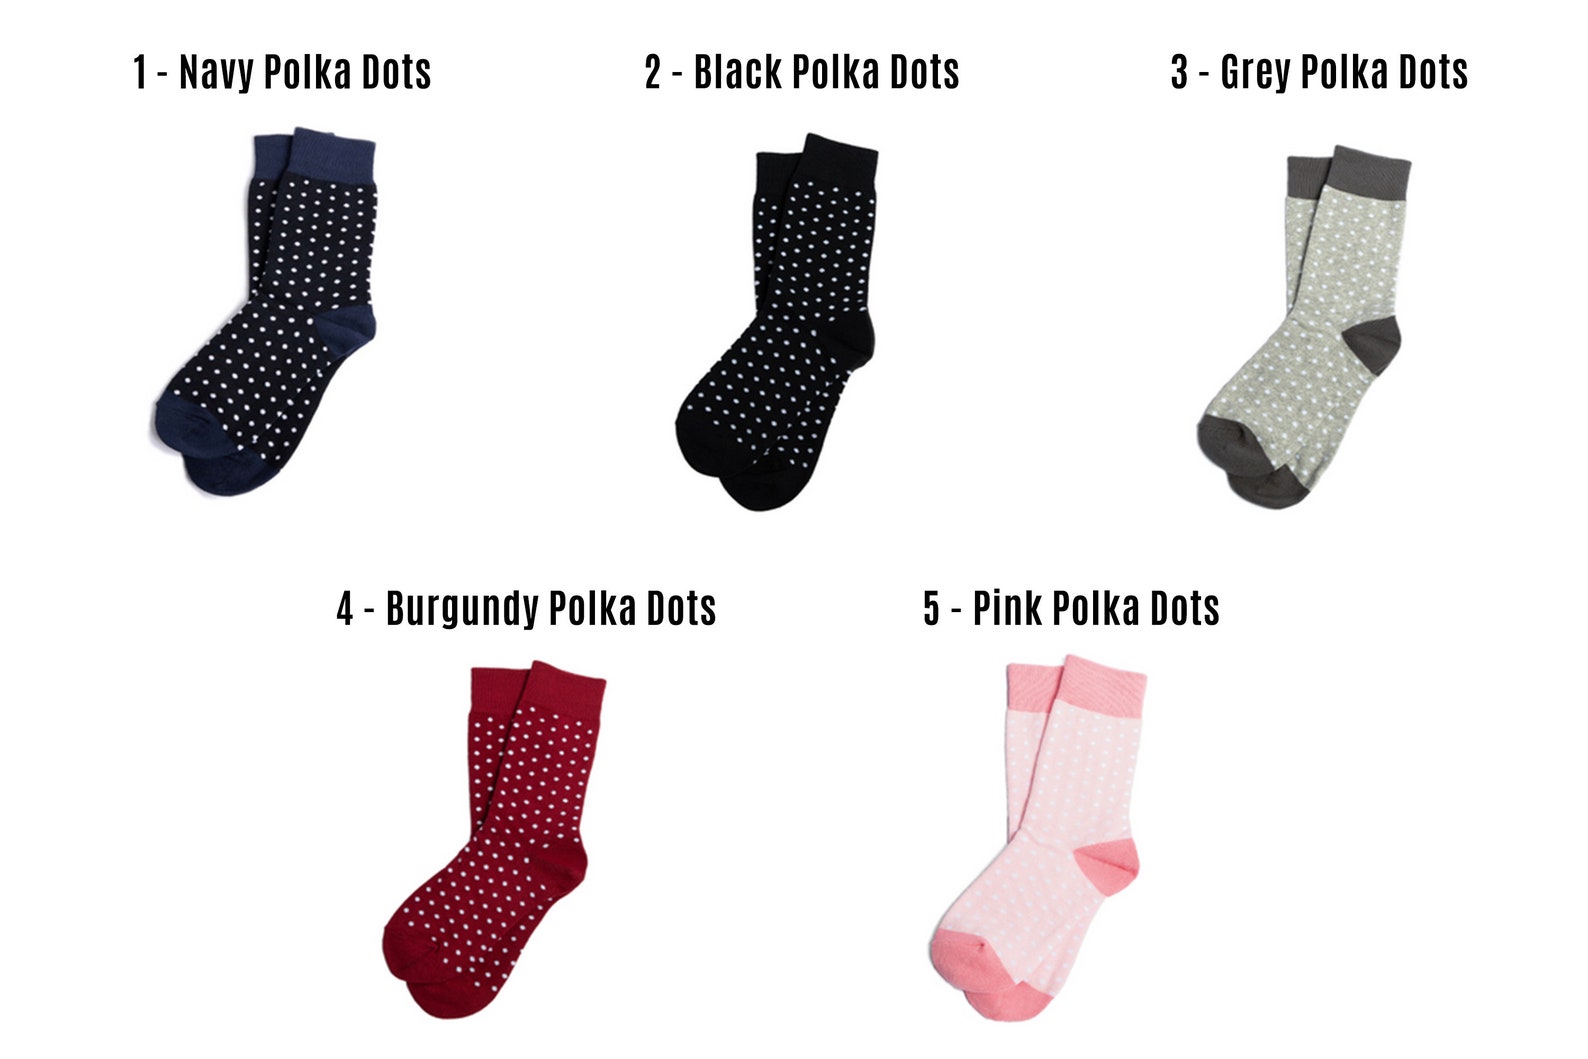 Custom Groomsmen Socks for Perfect Wedding Gift 17 Colors - Etsy